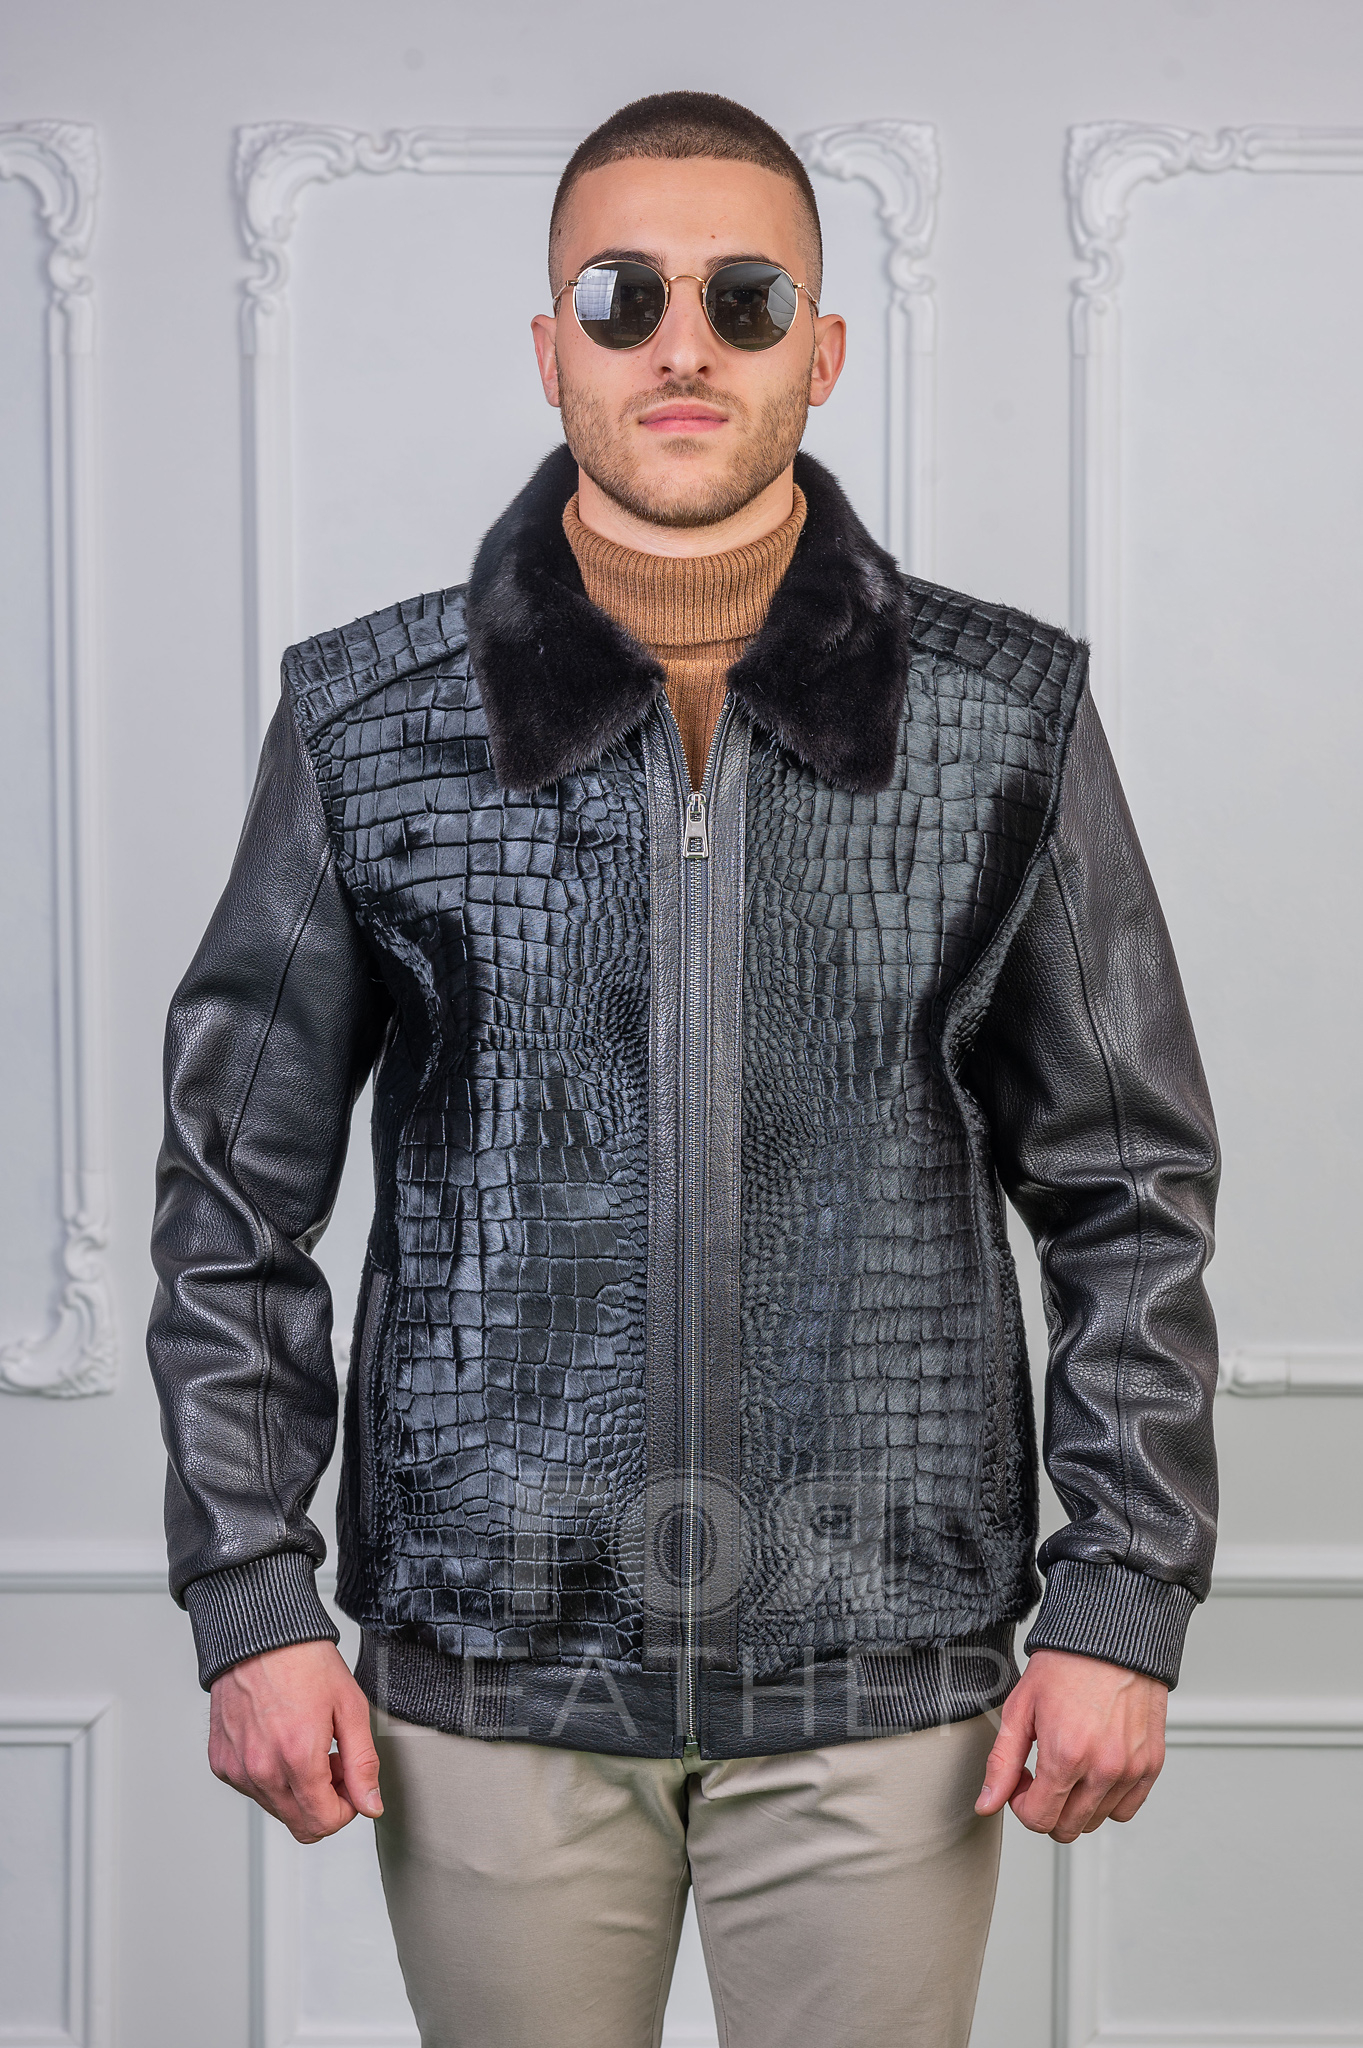 Мъжко екстравагантно кожено яке бомбър от ГОЯ Leather. Нов екстравагантен модел бомбър изработен от три вида качествена кожа. Нова луксозна колекция мъжки кожени якета 2022 г.